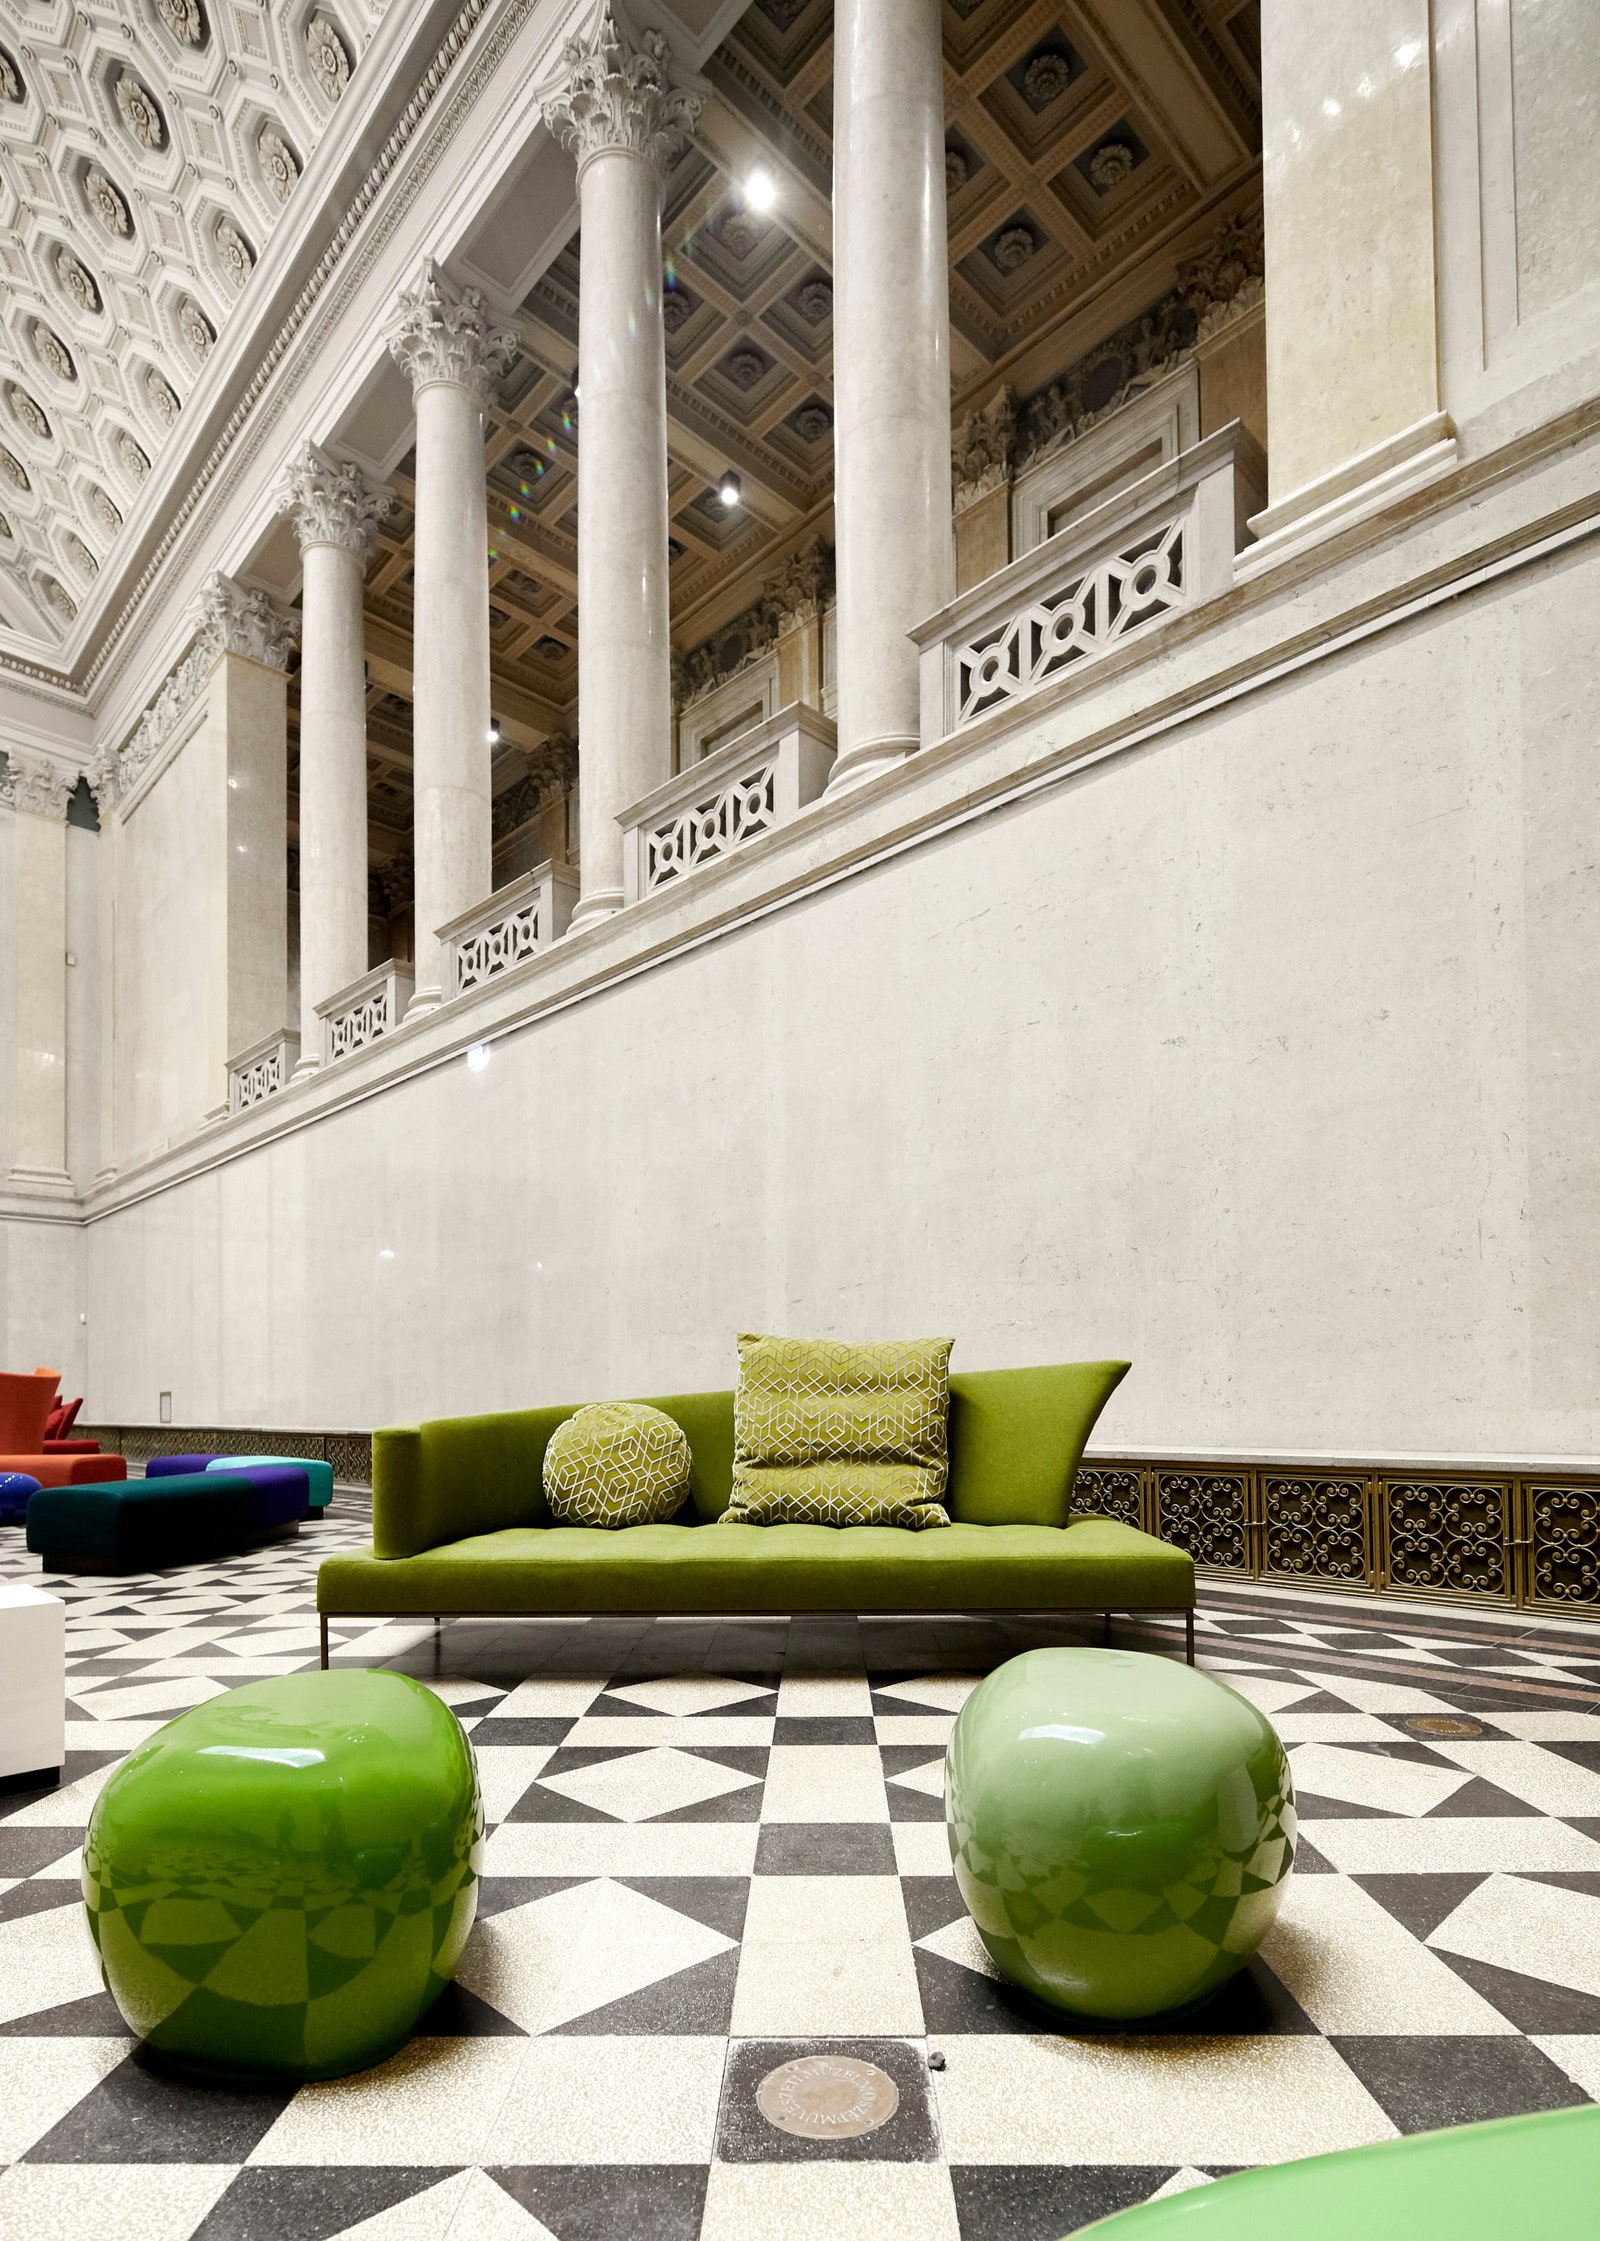 Компания Erba оформила Мраморный зал в Музее изобразительных искусств в Будапеште